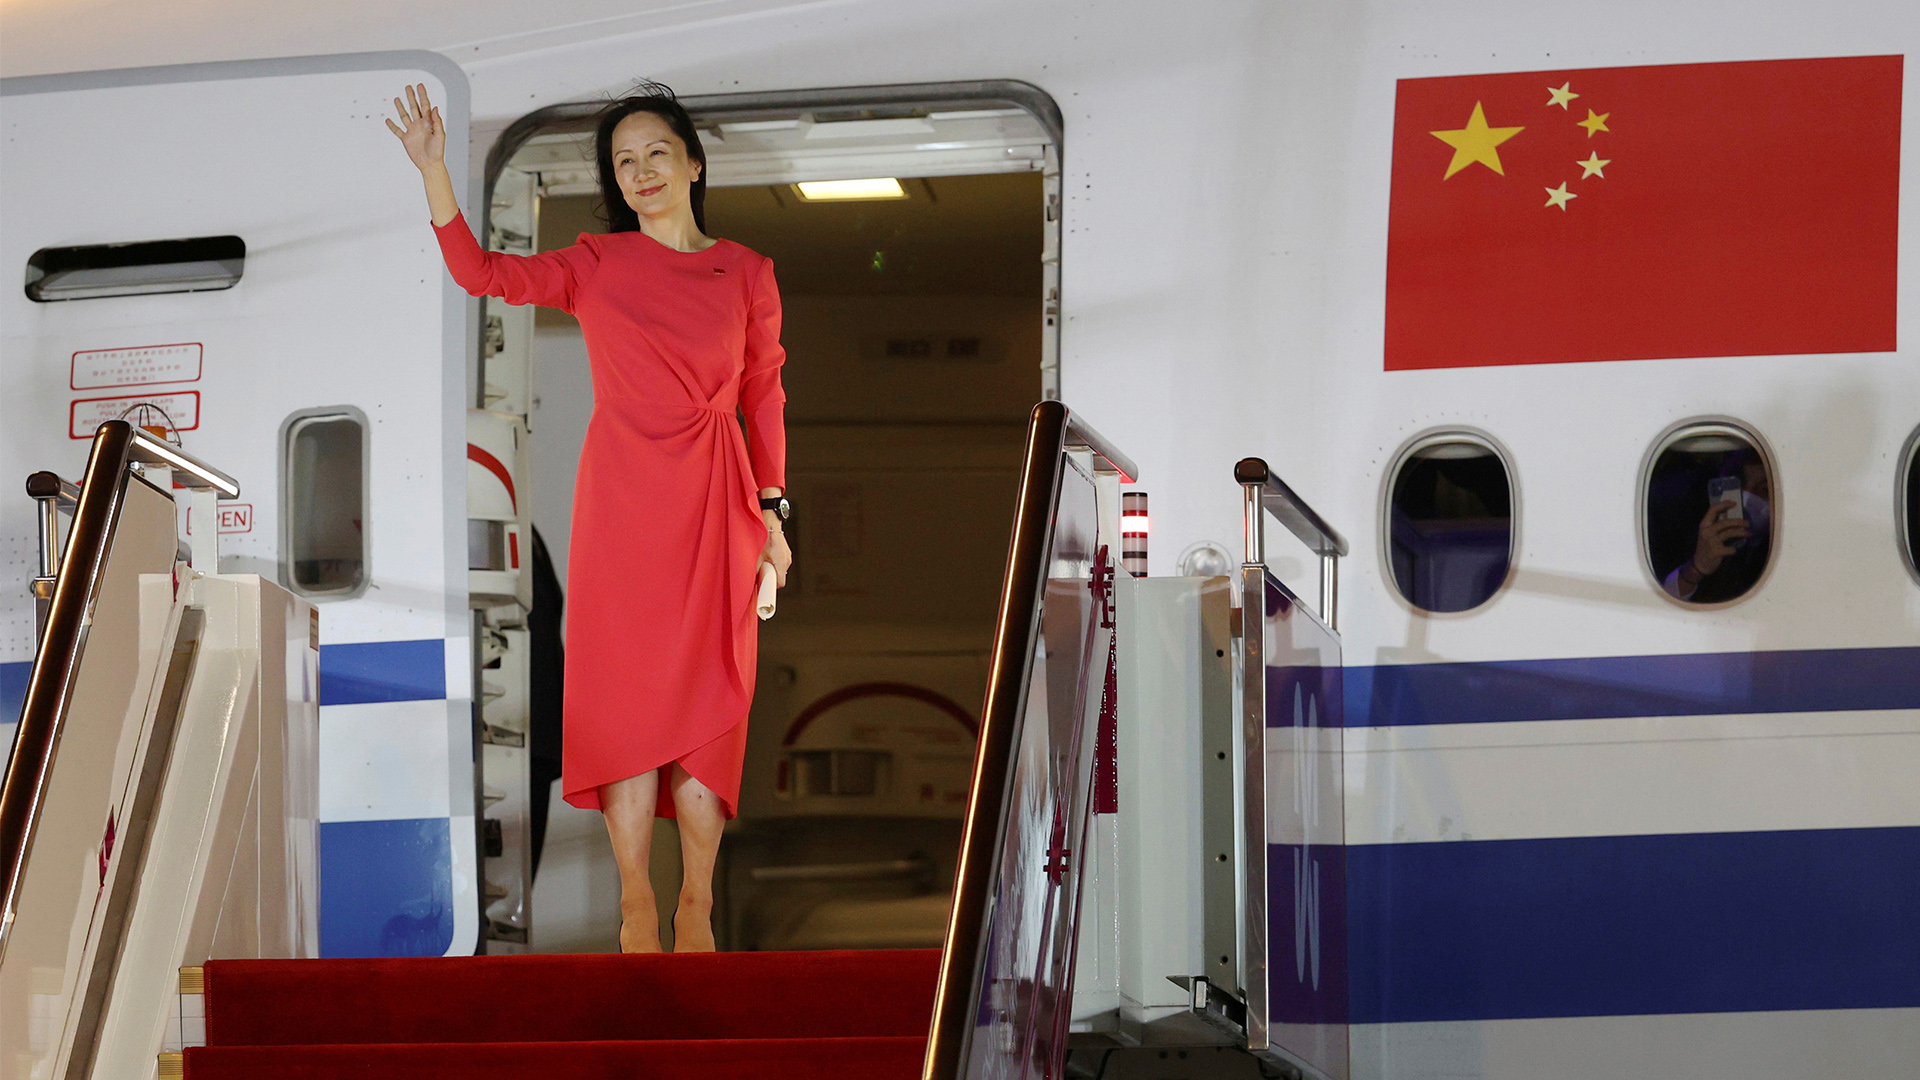 Frau Meng Wanzhou winkt als sie bei Ankunft auf dem Flughafen aus dem Flugzeug steigt.